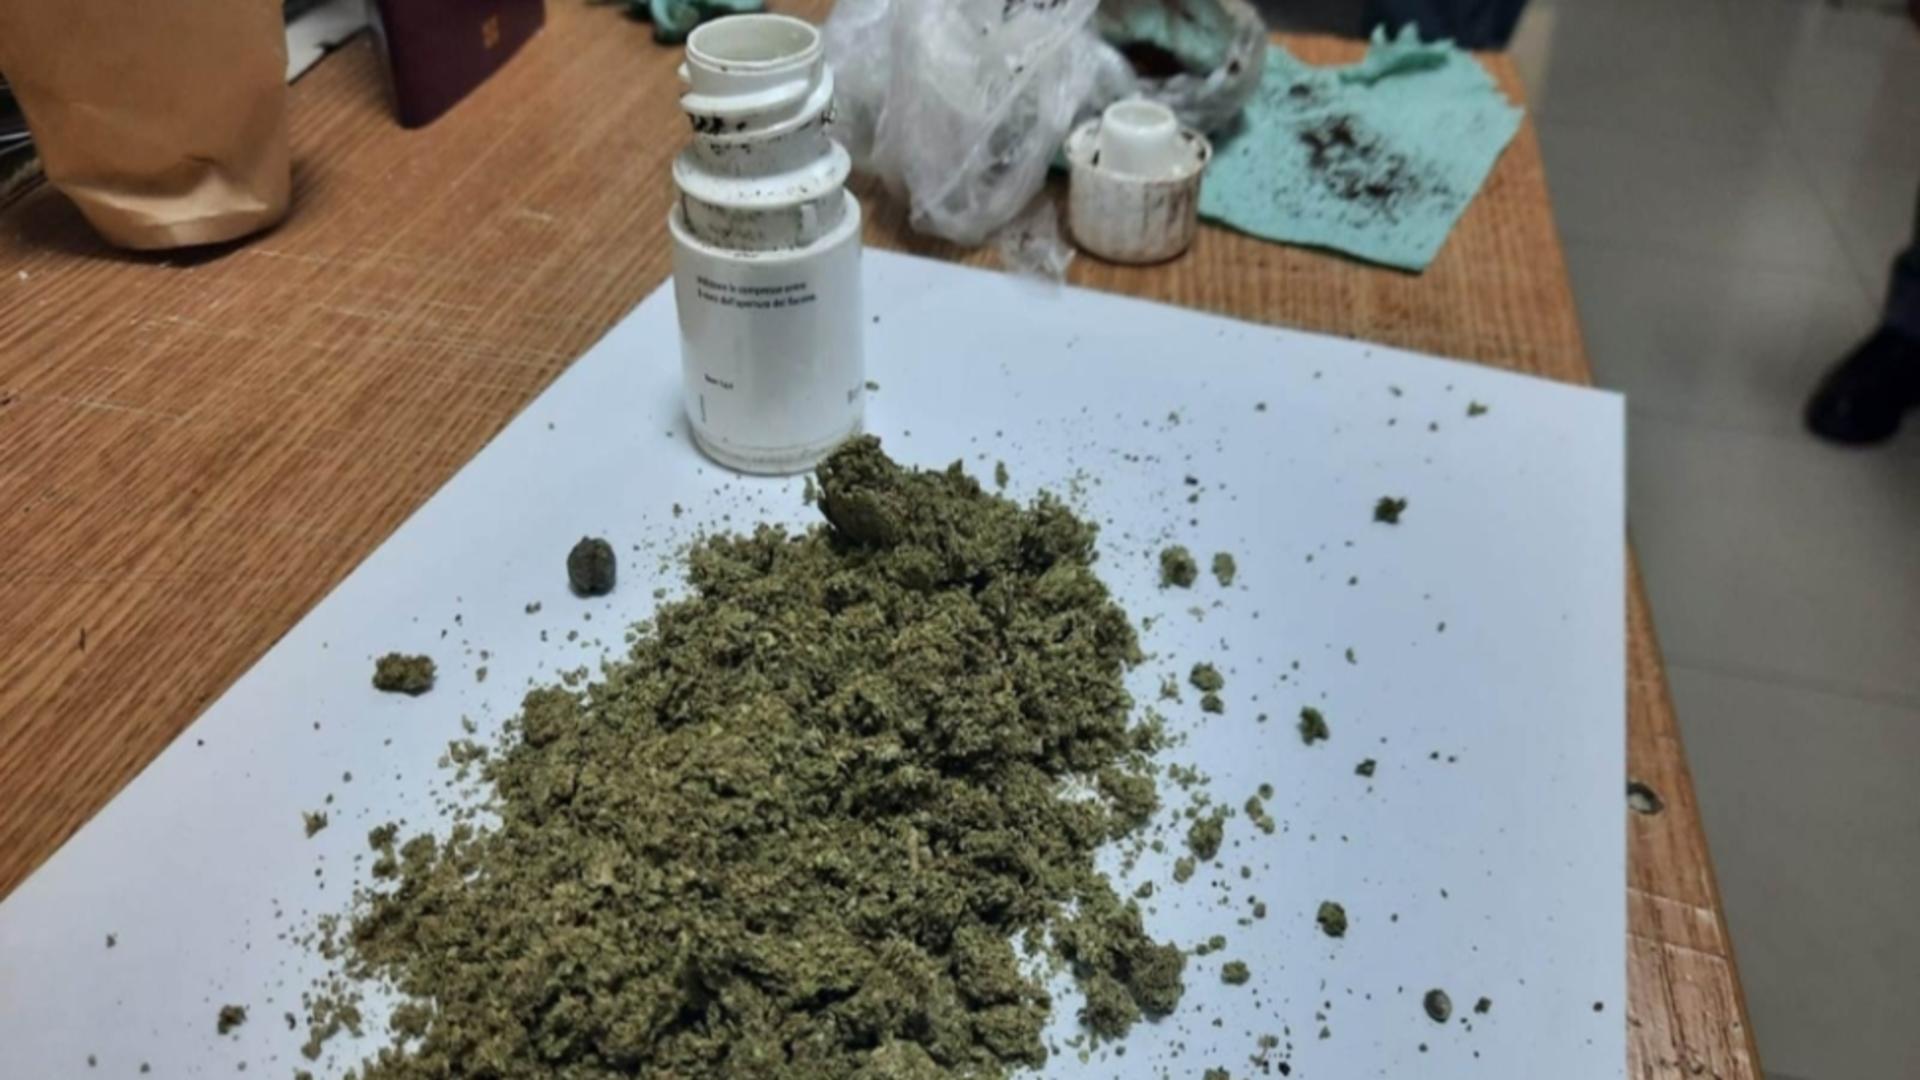 Droguri ascunse într-un flacon de medicamente / Poliția de frontieră